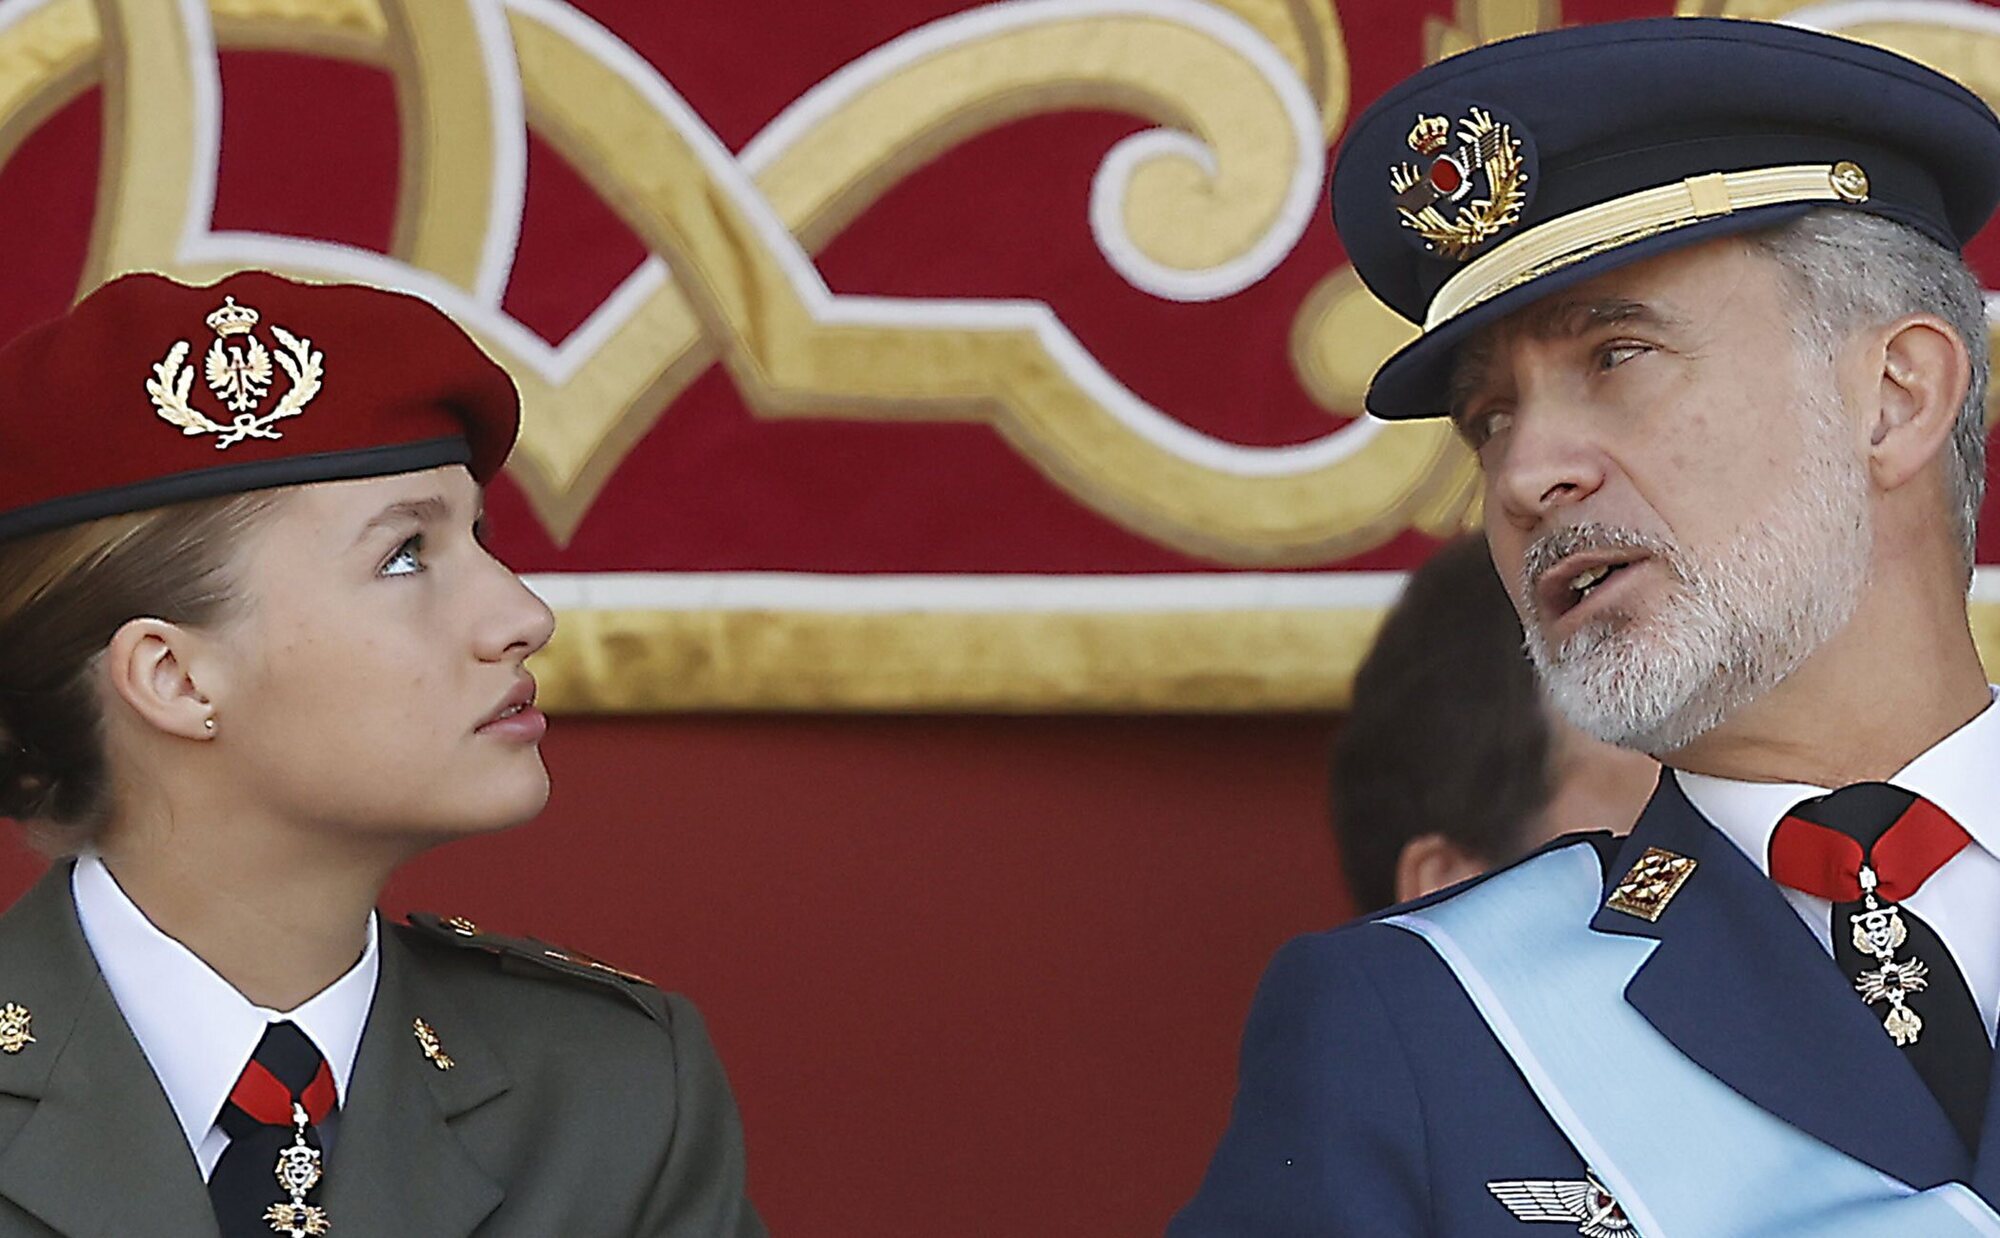 La afición compartida del Rey Felipe VI y la Princesa Leonor que ha ayudado a la Princesa de Asturias en su formación militar